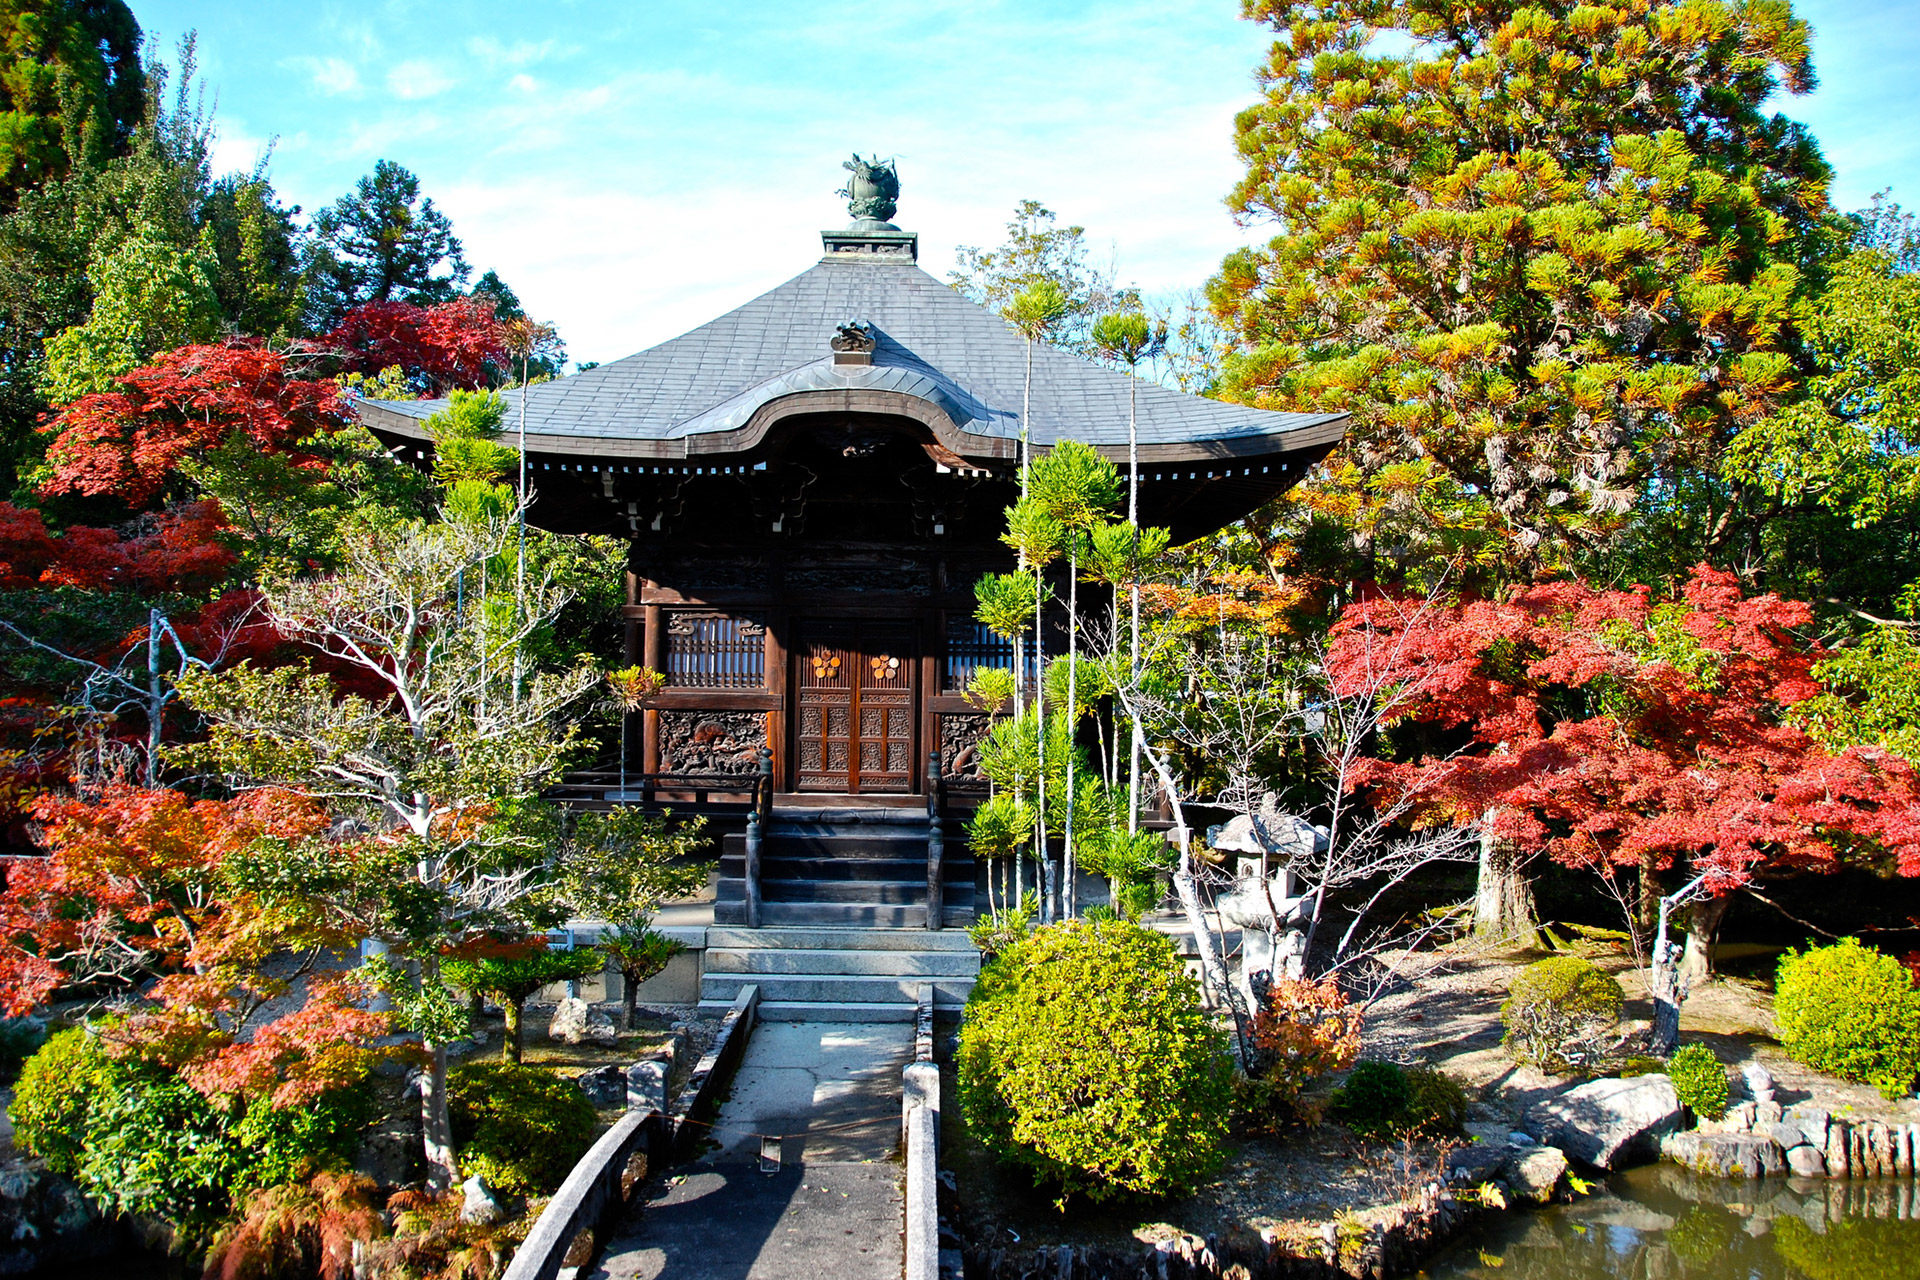 京都を訪れて秋のデートを満喫しませんか 秋のデートにおすすめの京都観光スポットをご紹介 Caedekyoto カエデ京都 紅葉と伝統美を引き継ぐバッグ